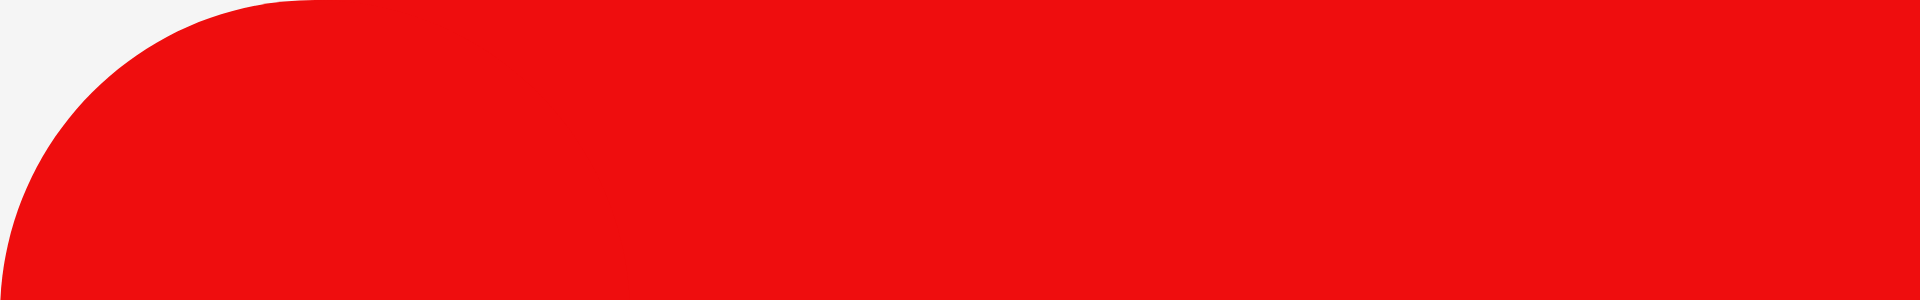 czerwone z szarym lewa gora - agencja marketingowa warszawa